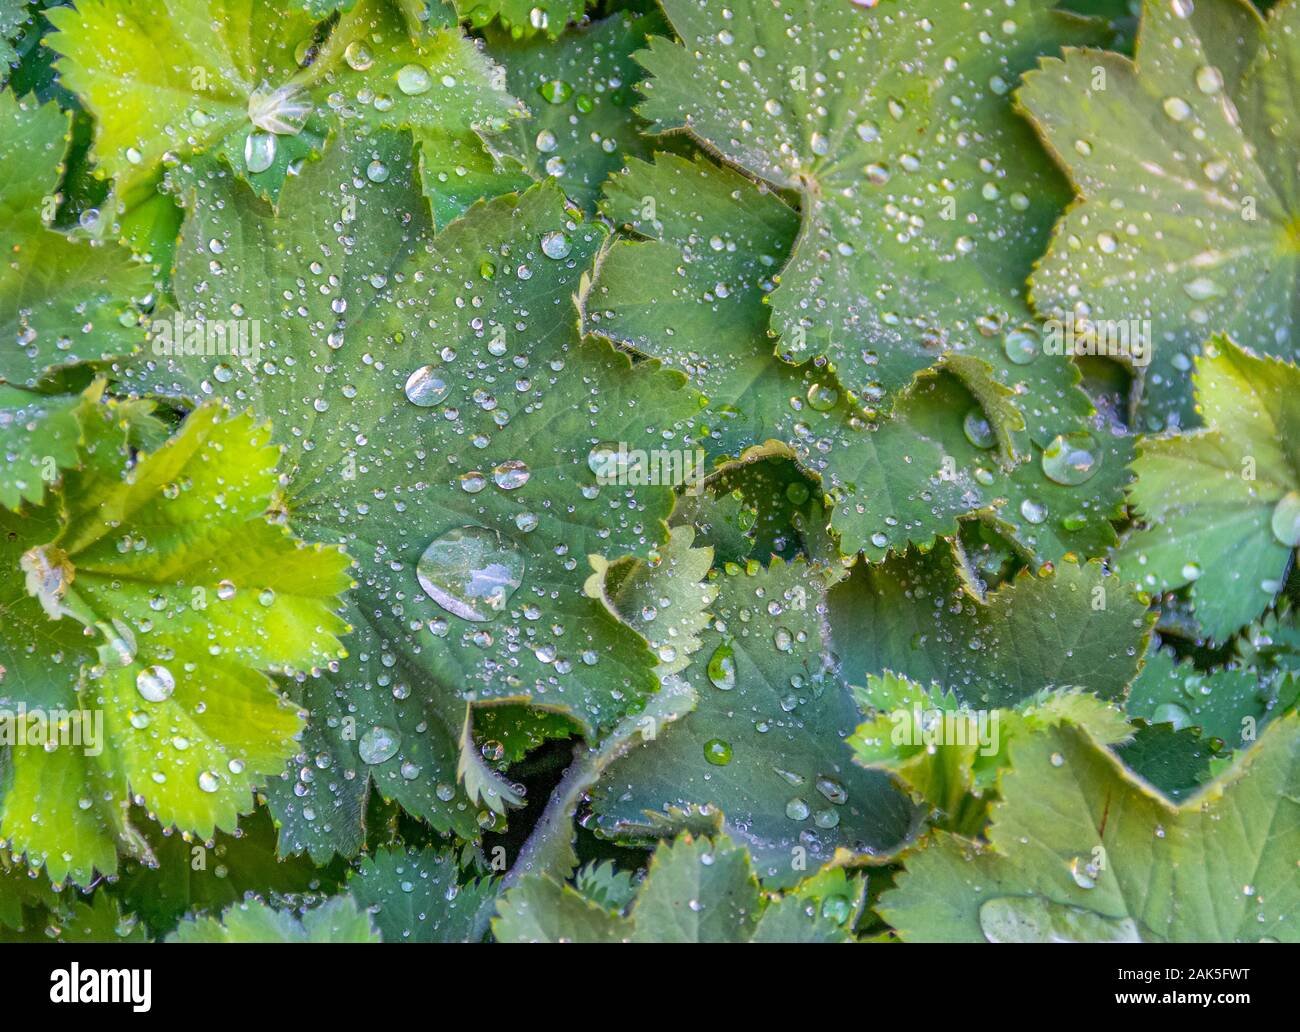 full frame wet green water repellent leaves Stock Photo